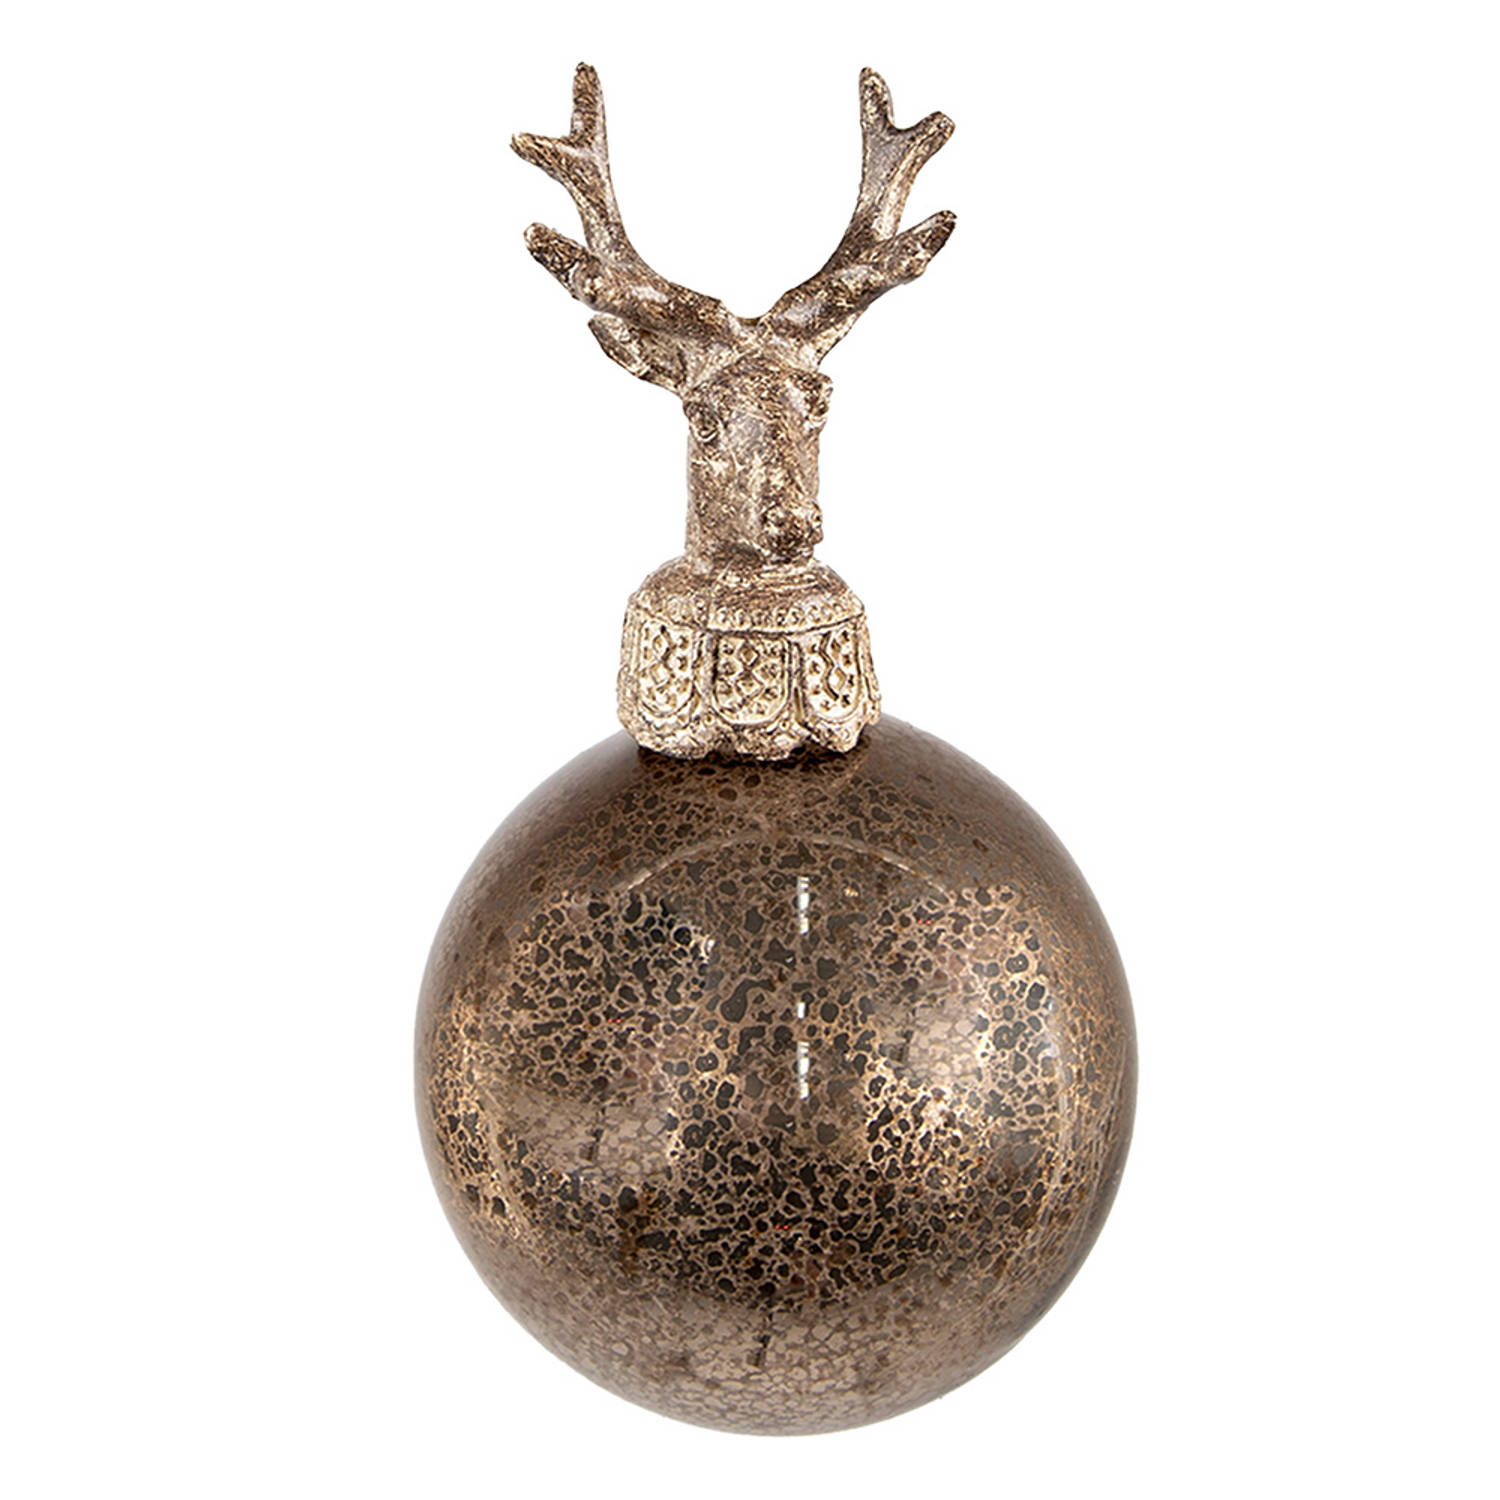 HAES DECO - Kerstbal - Formaat Ø 8x14 cm - Kleur Bruin - Materiaal Glas / Polyresin - Kerstversiering, Kerstdecoratie, Decoratie Hanger, Kerstboomversiering